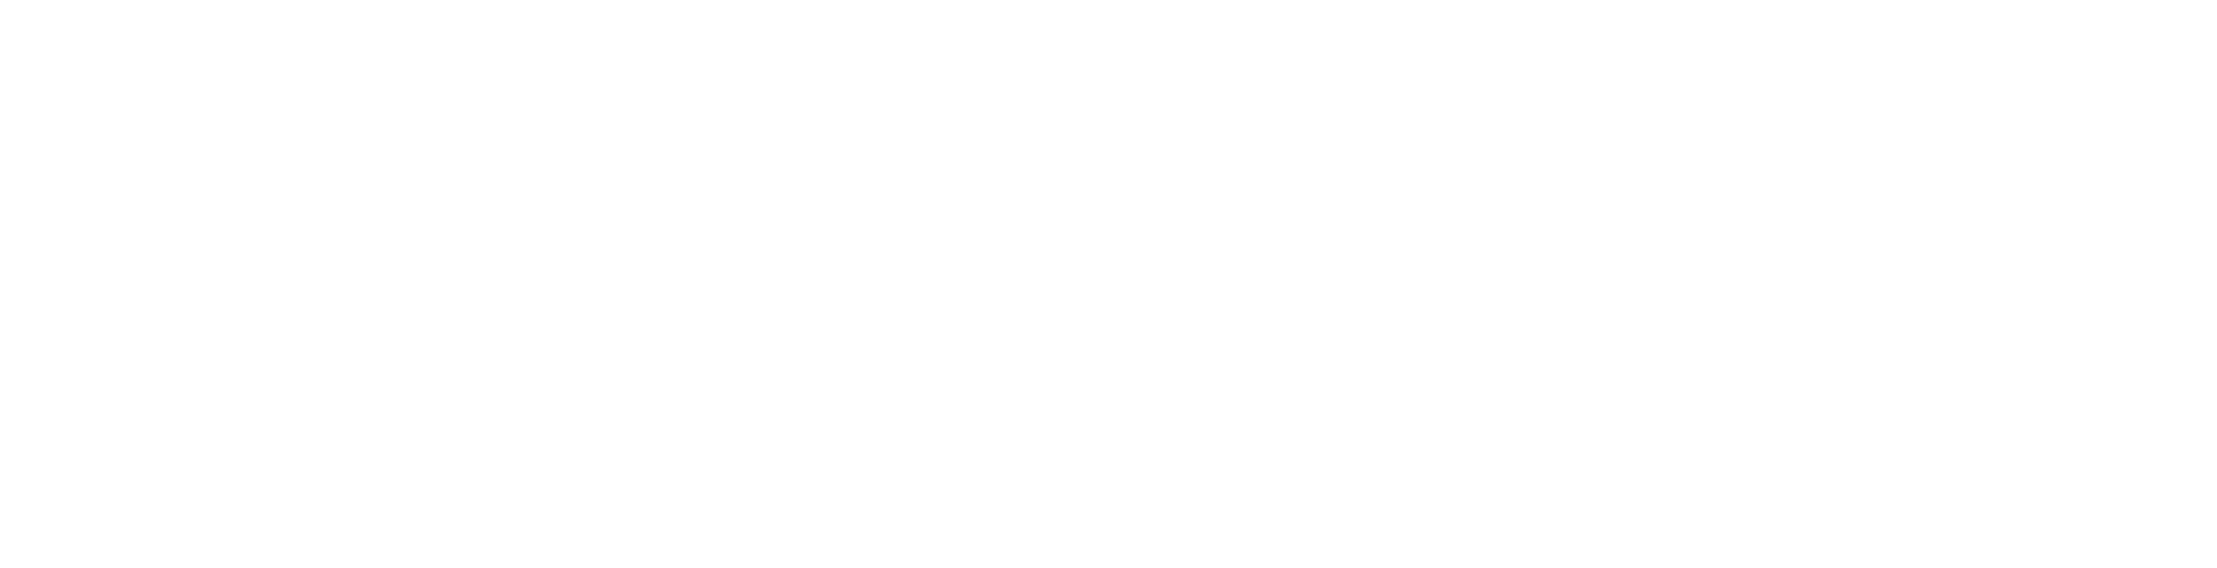 MIRAI-Bit